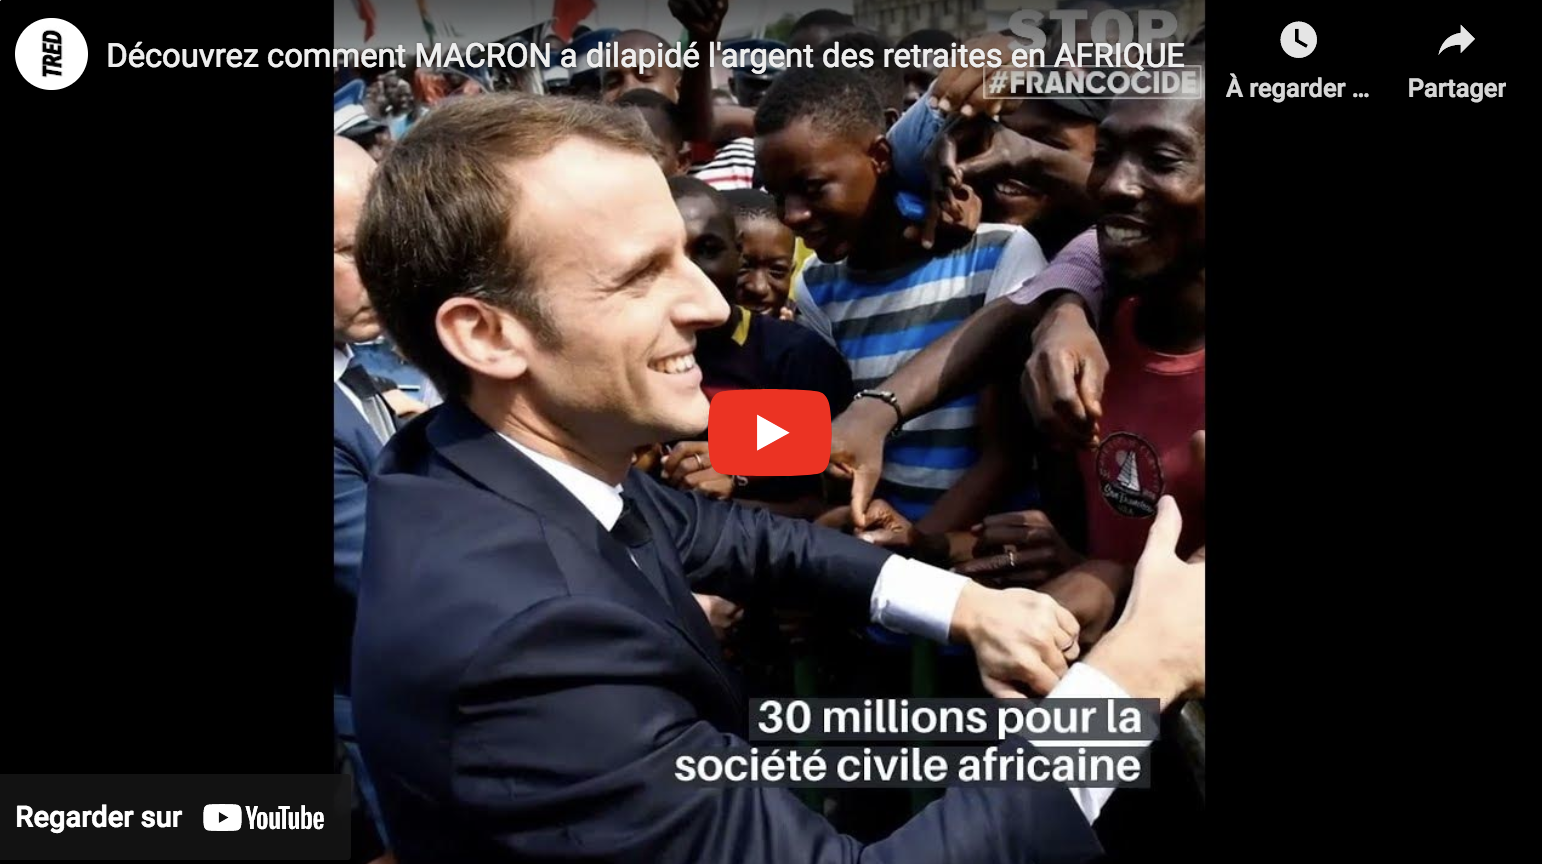 Découvrez comment Emmanuel Macron a dilapidé l’argent des retraites en Afrique (VIDÉO)